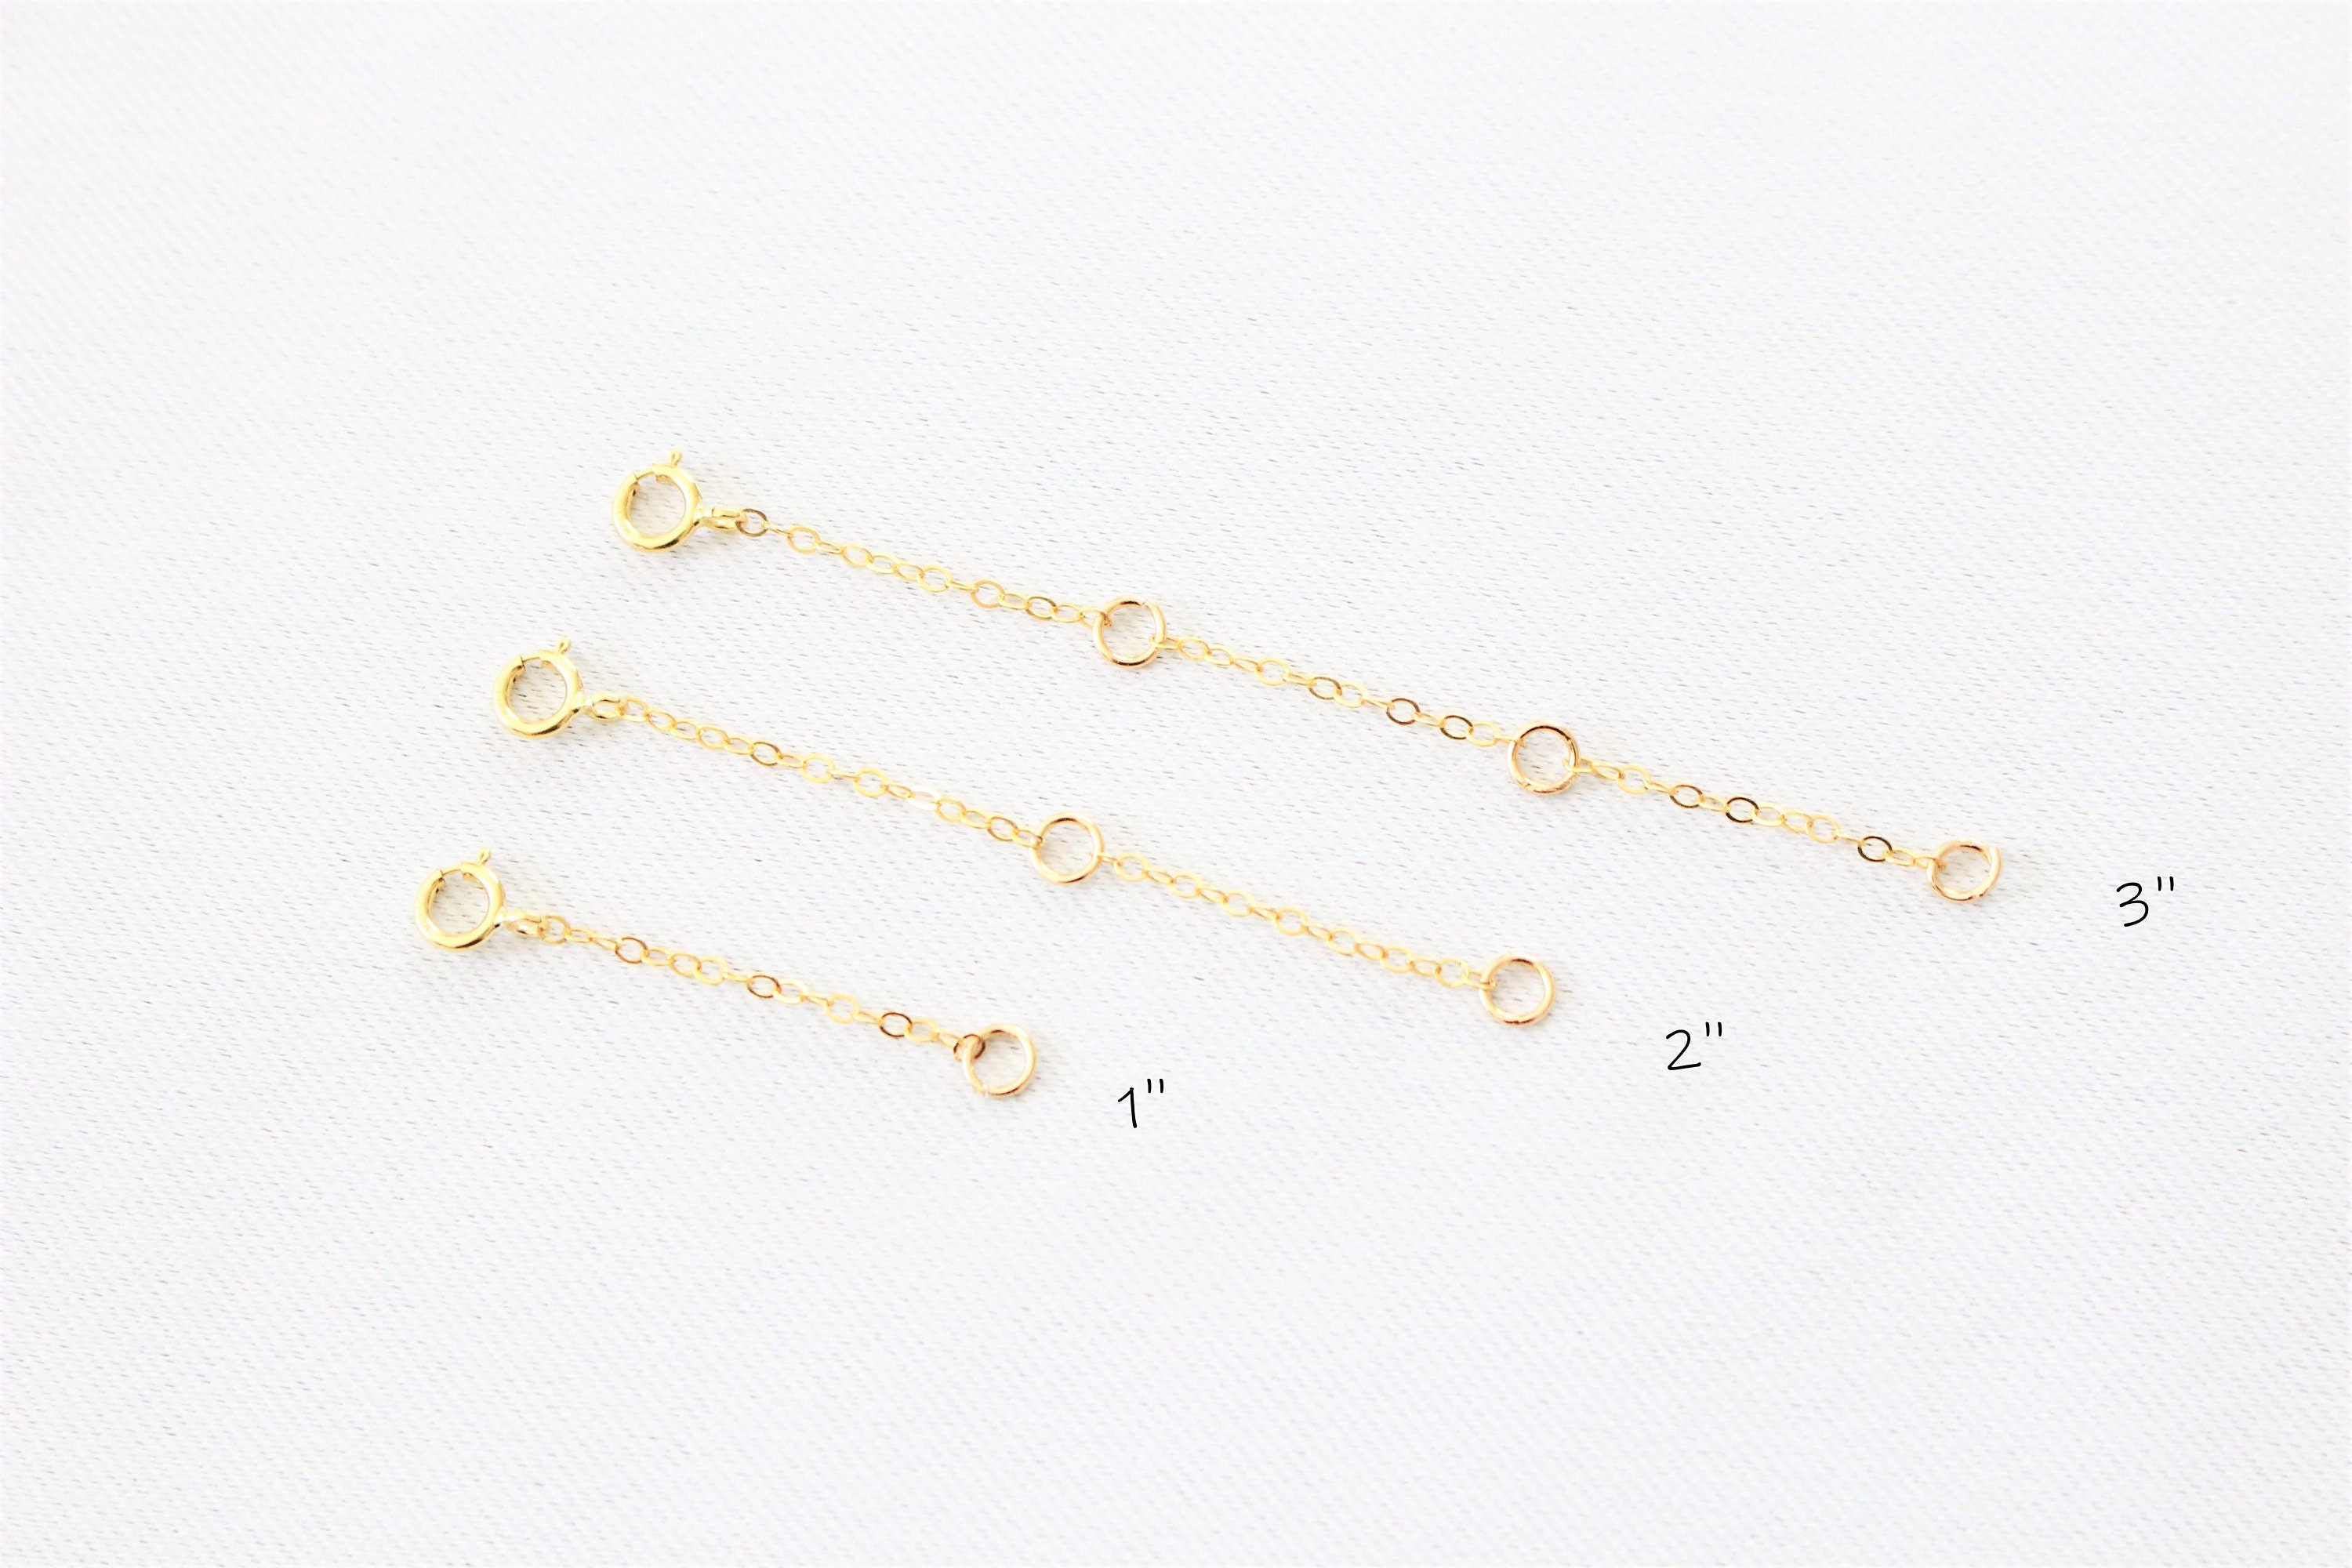 Lulau 14K Solid Gold Necklace Extender Real 14K Bracelet Extender 2 3 4 inch Durable Adjustable Chain Gold Anklets Extension for Women 2 3 4 (14k